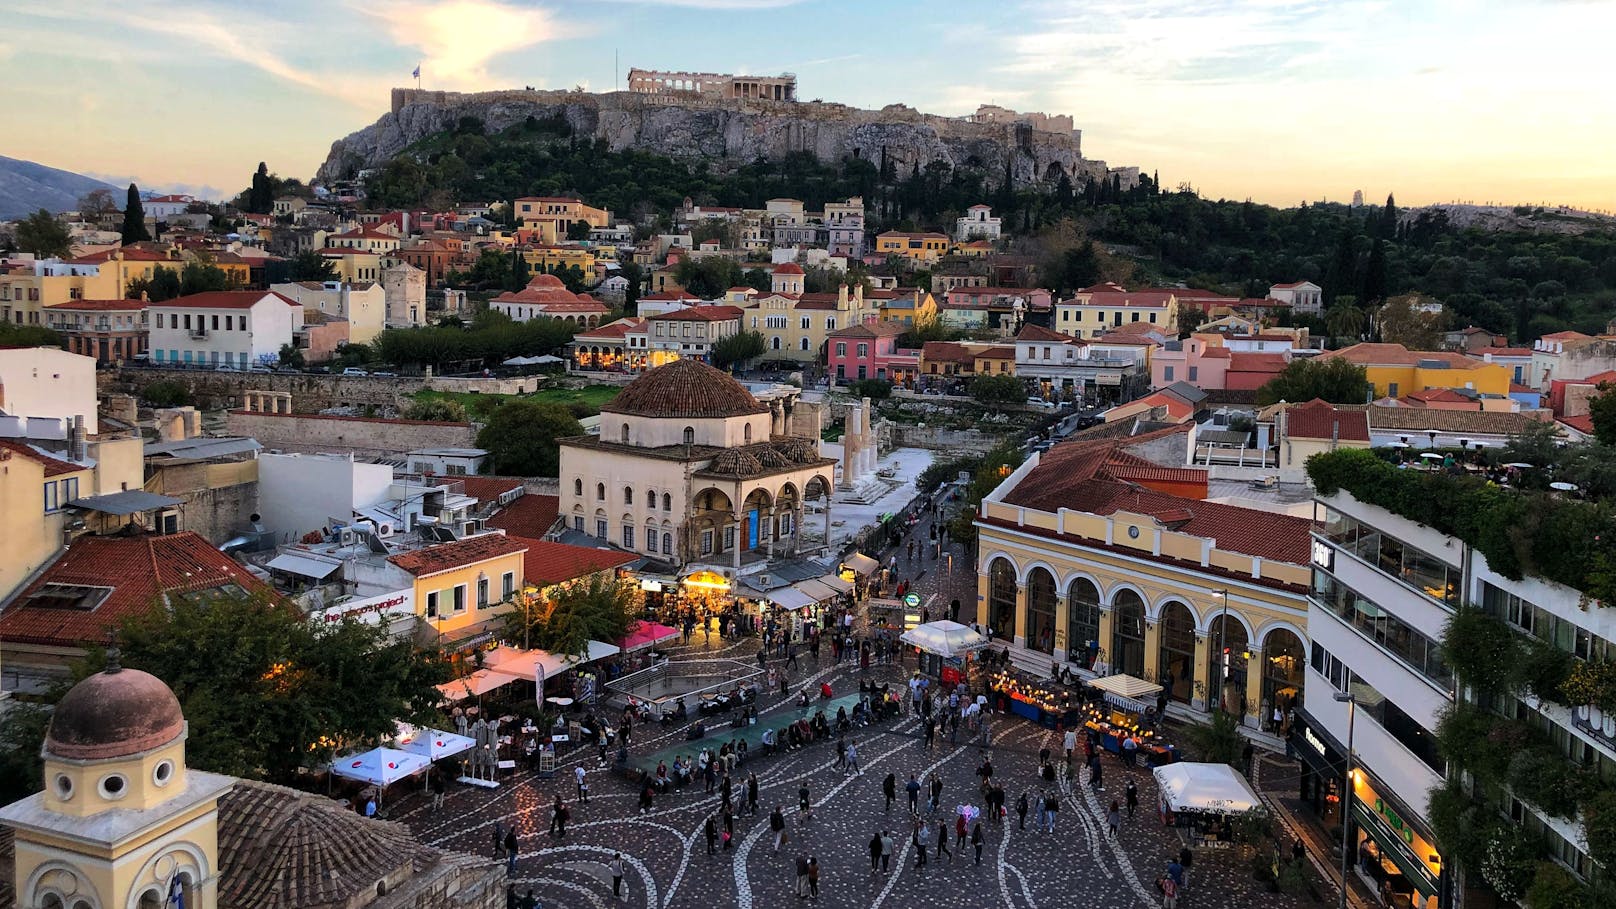 Athen ist ein besonders beliebtes Reiseziel – gehört aber auch zu den risikoreichsten Erdbebengebieten.